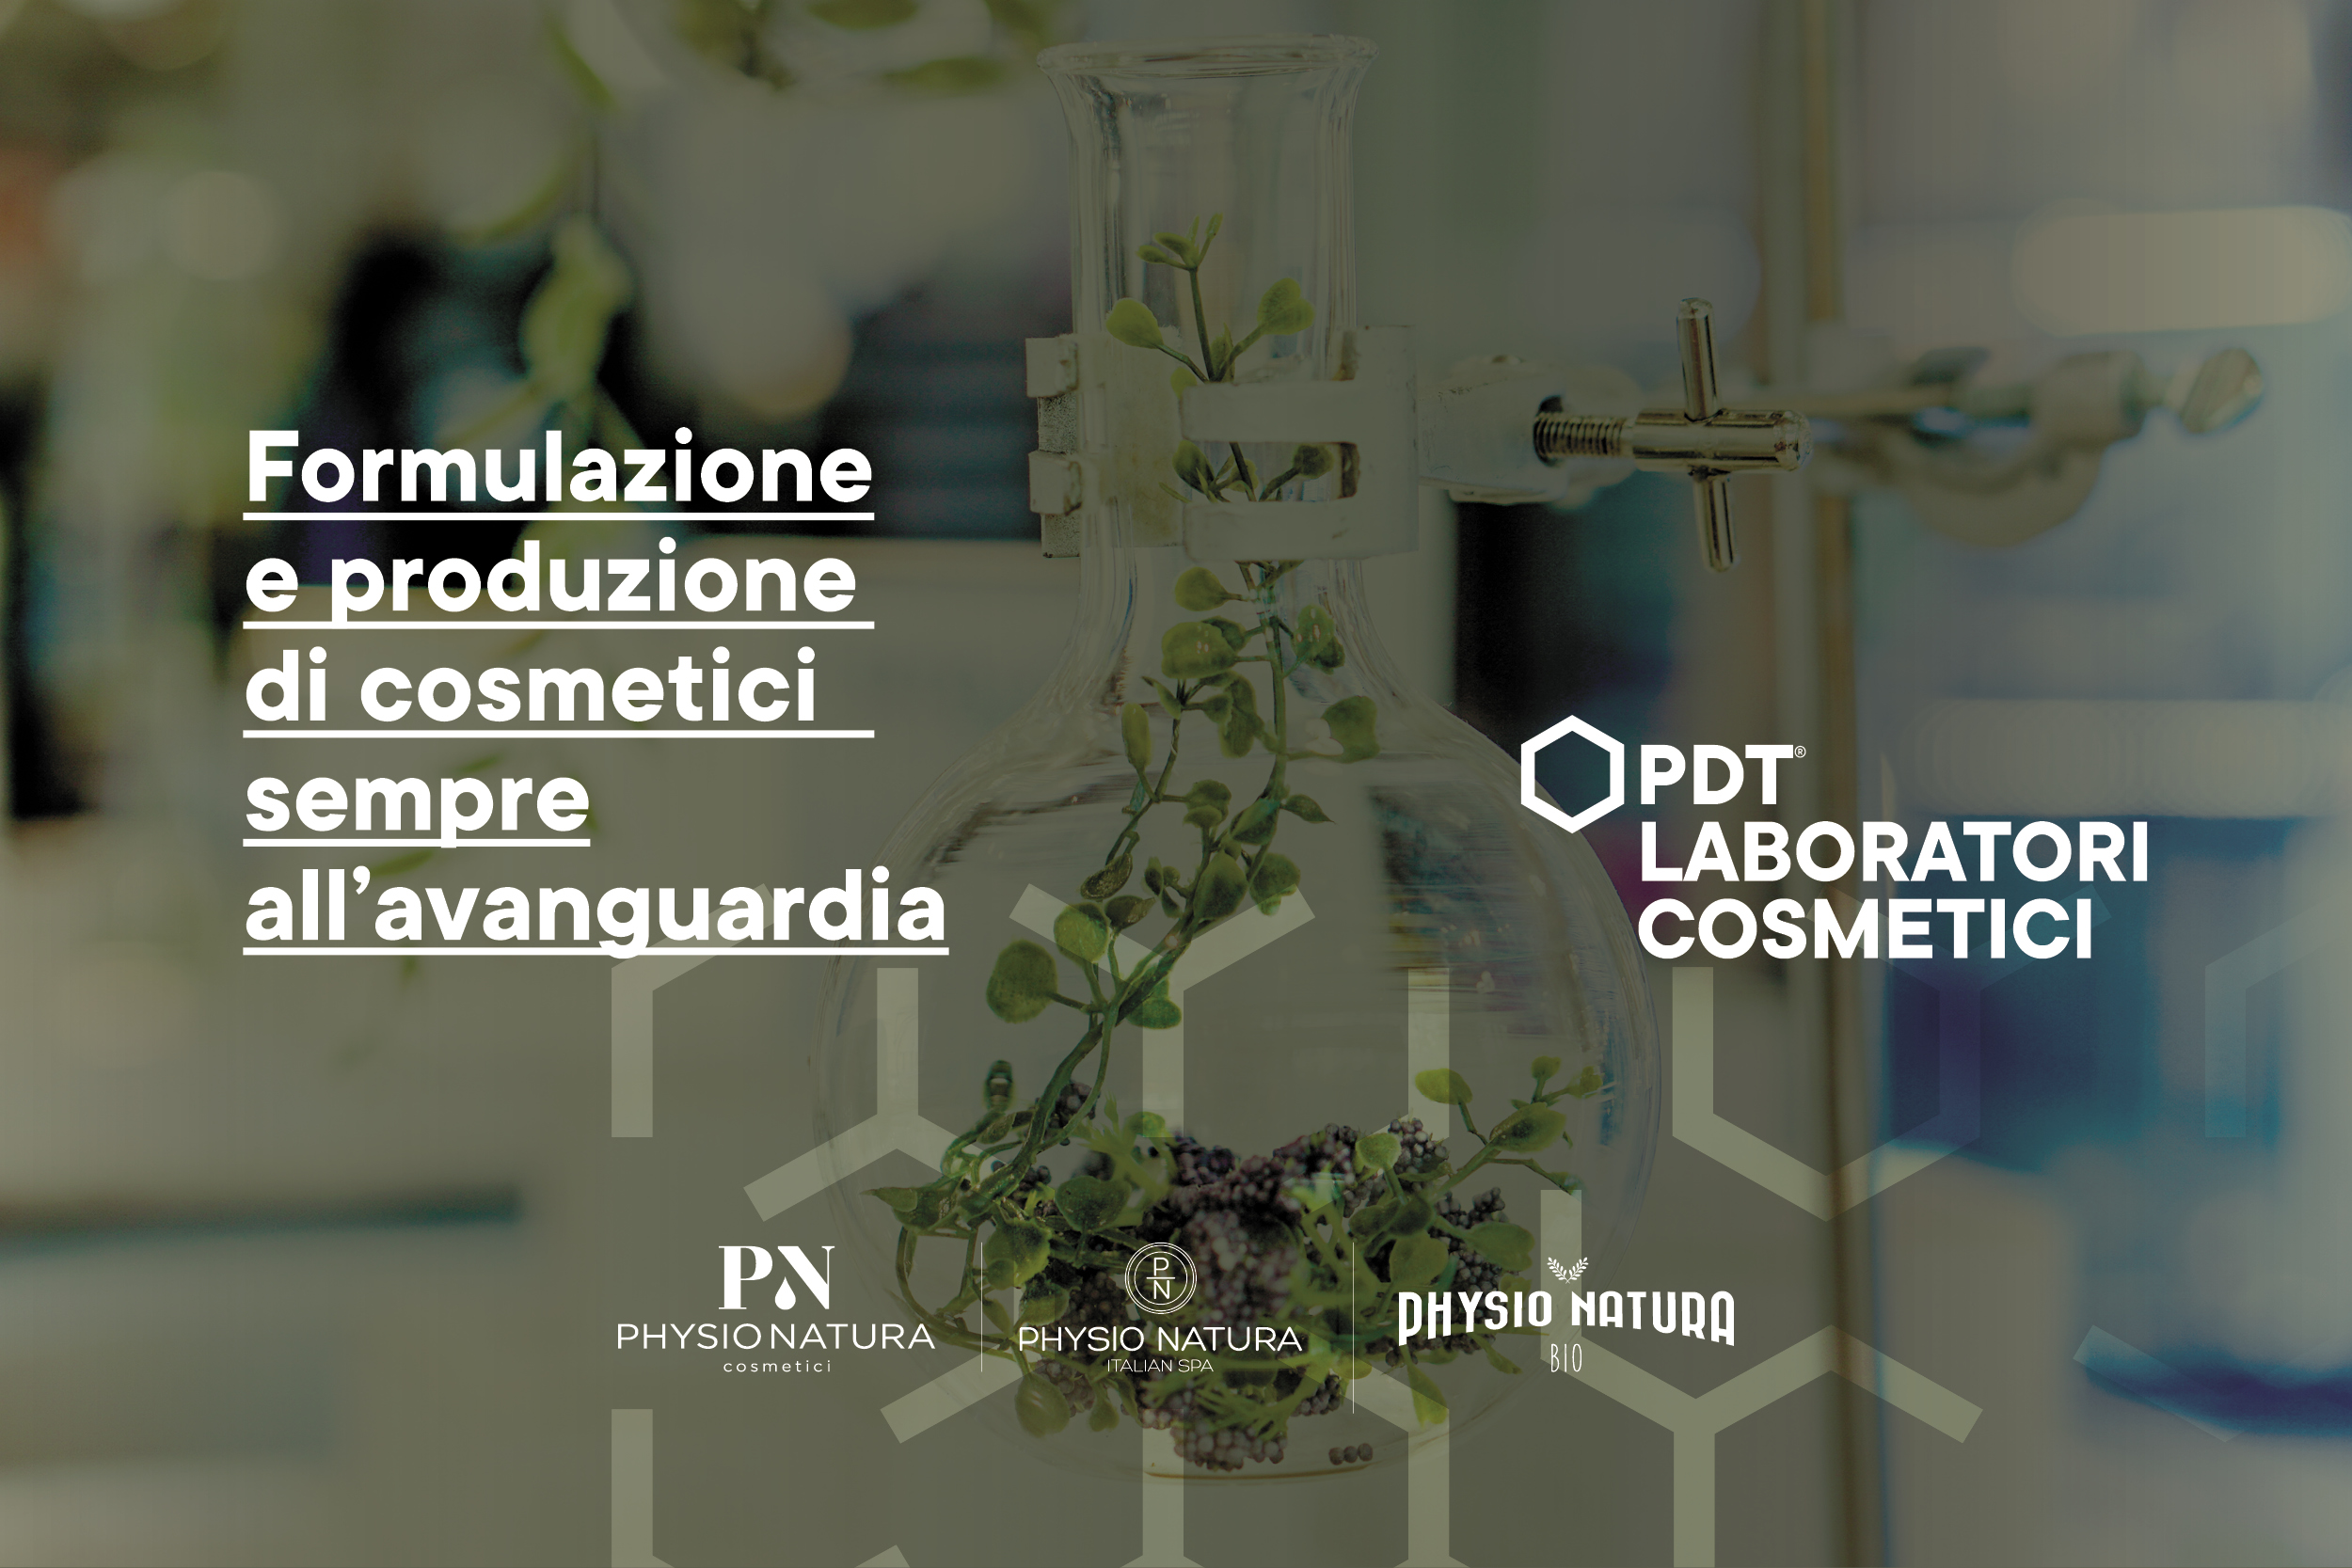 PDT Laboratori Cosmetici a Milano per Connext, l’evento di Confindustria